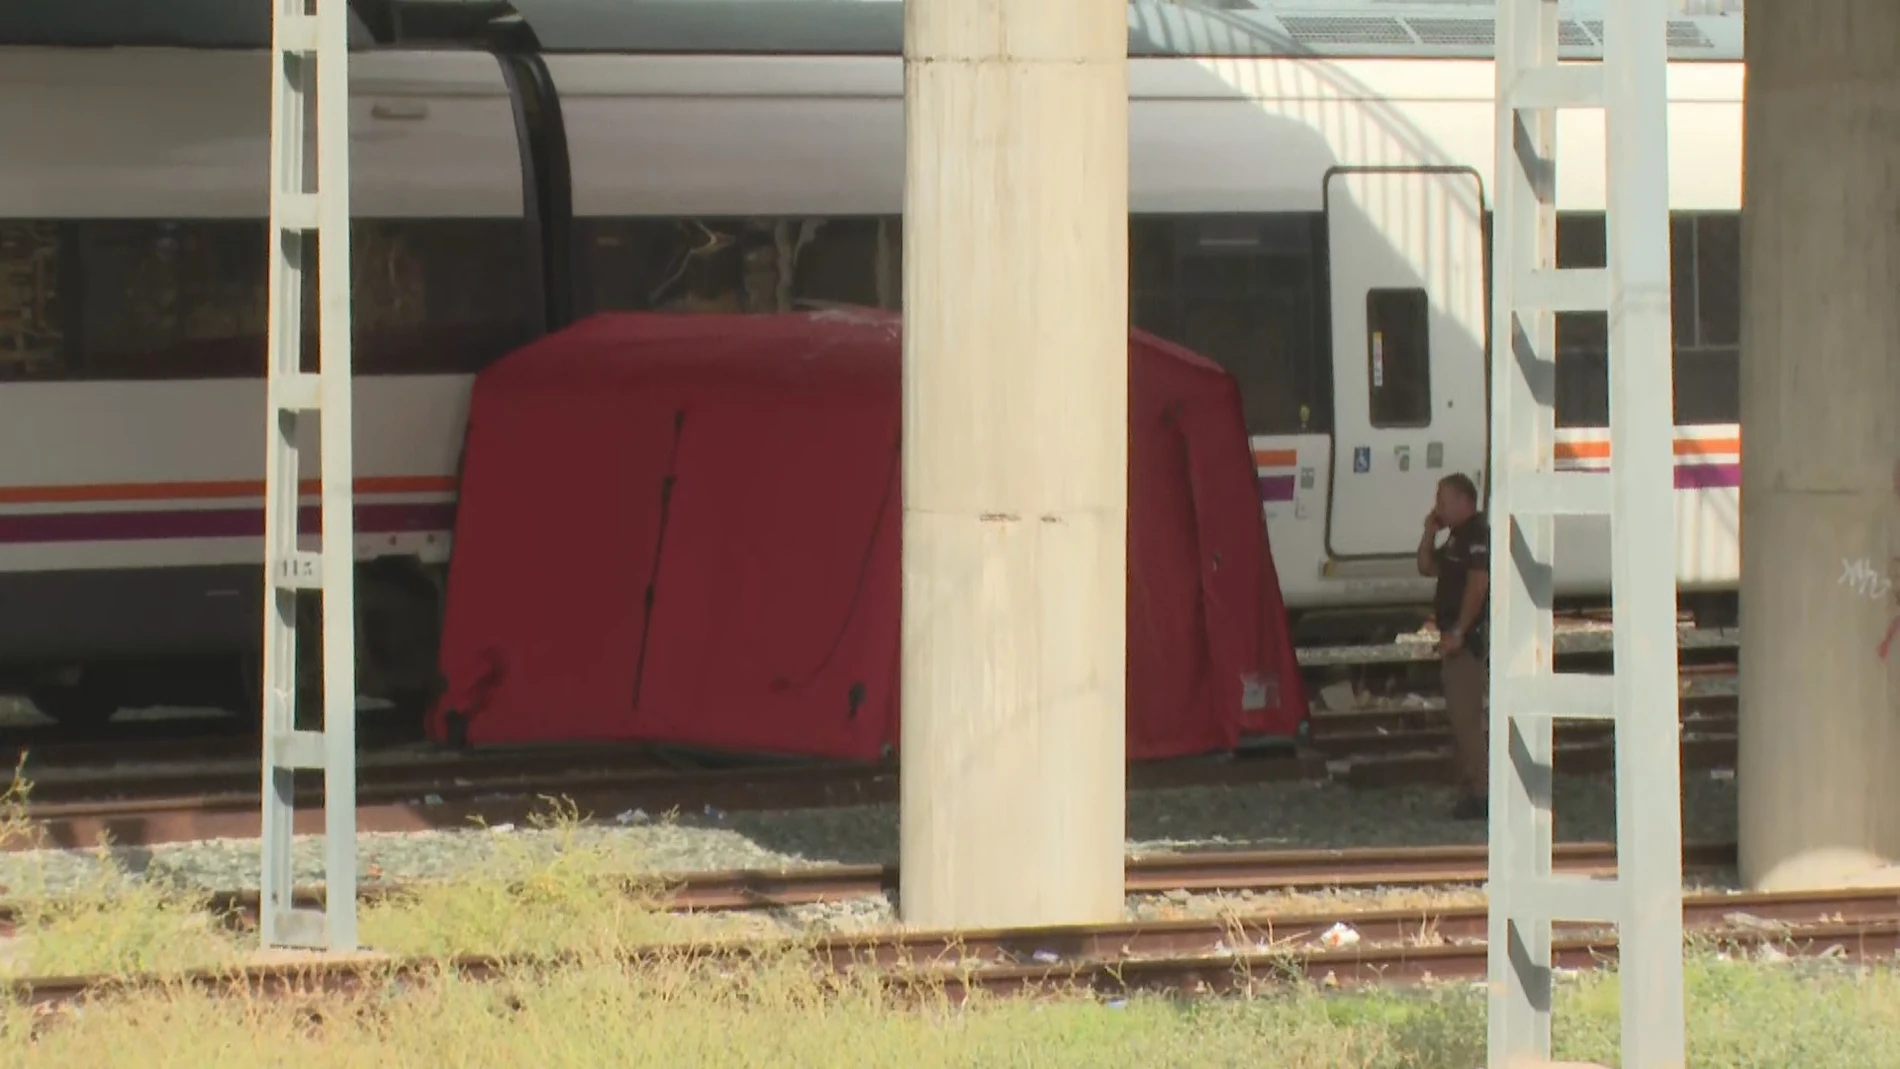 Encuentran el cadáver de Álvaro Prieto entre los vagones de un tren en la estación de Santa Justa, Sevilla